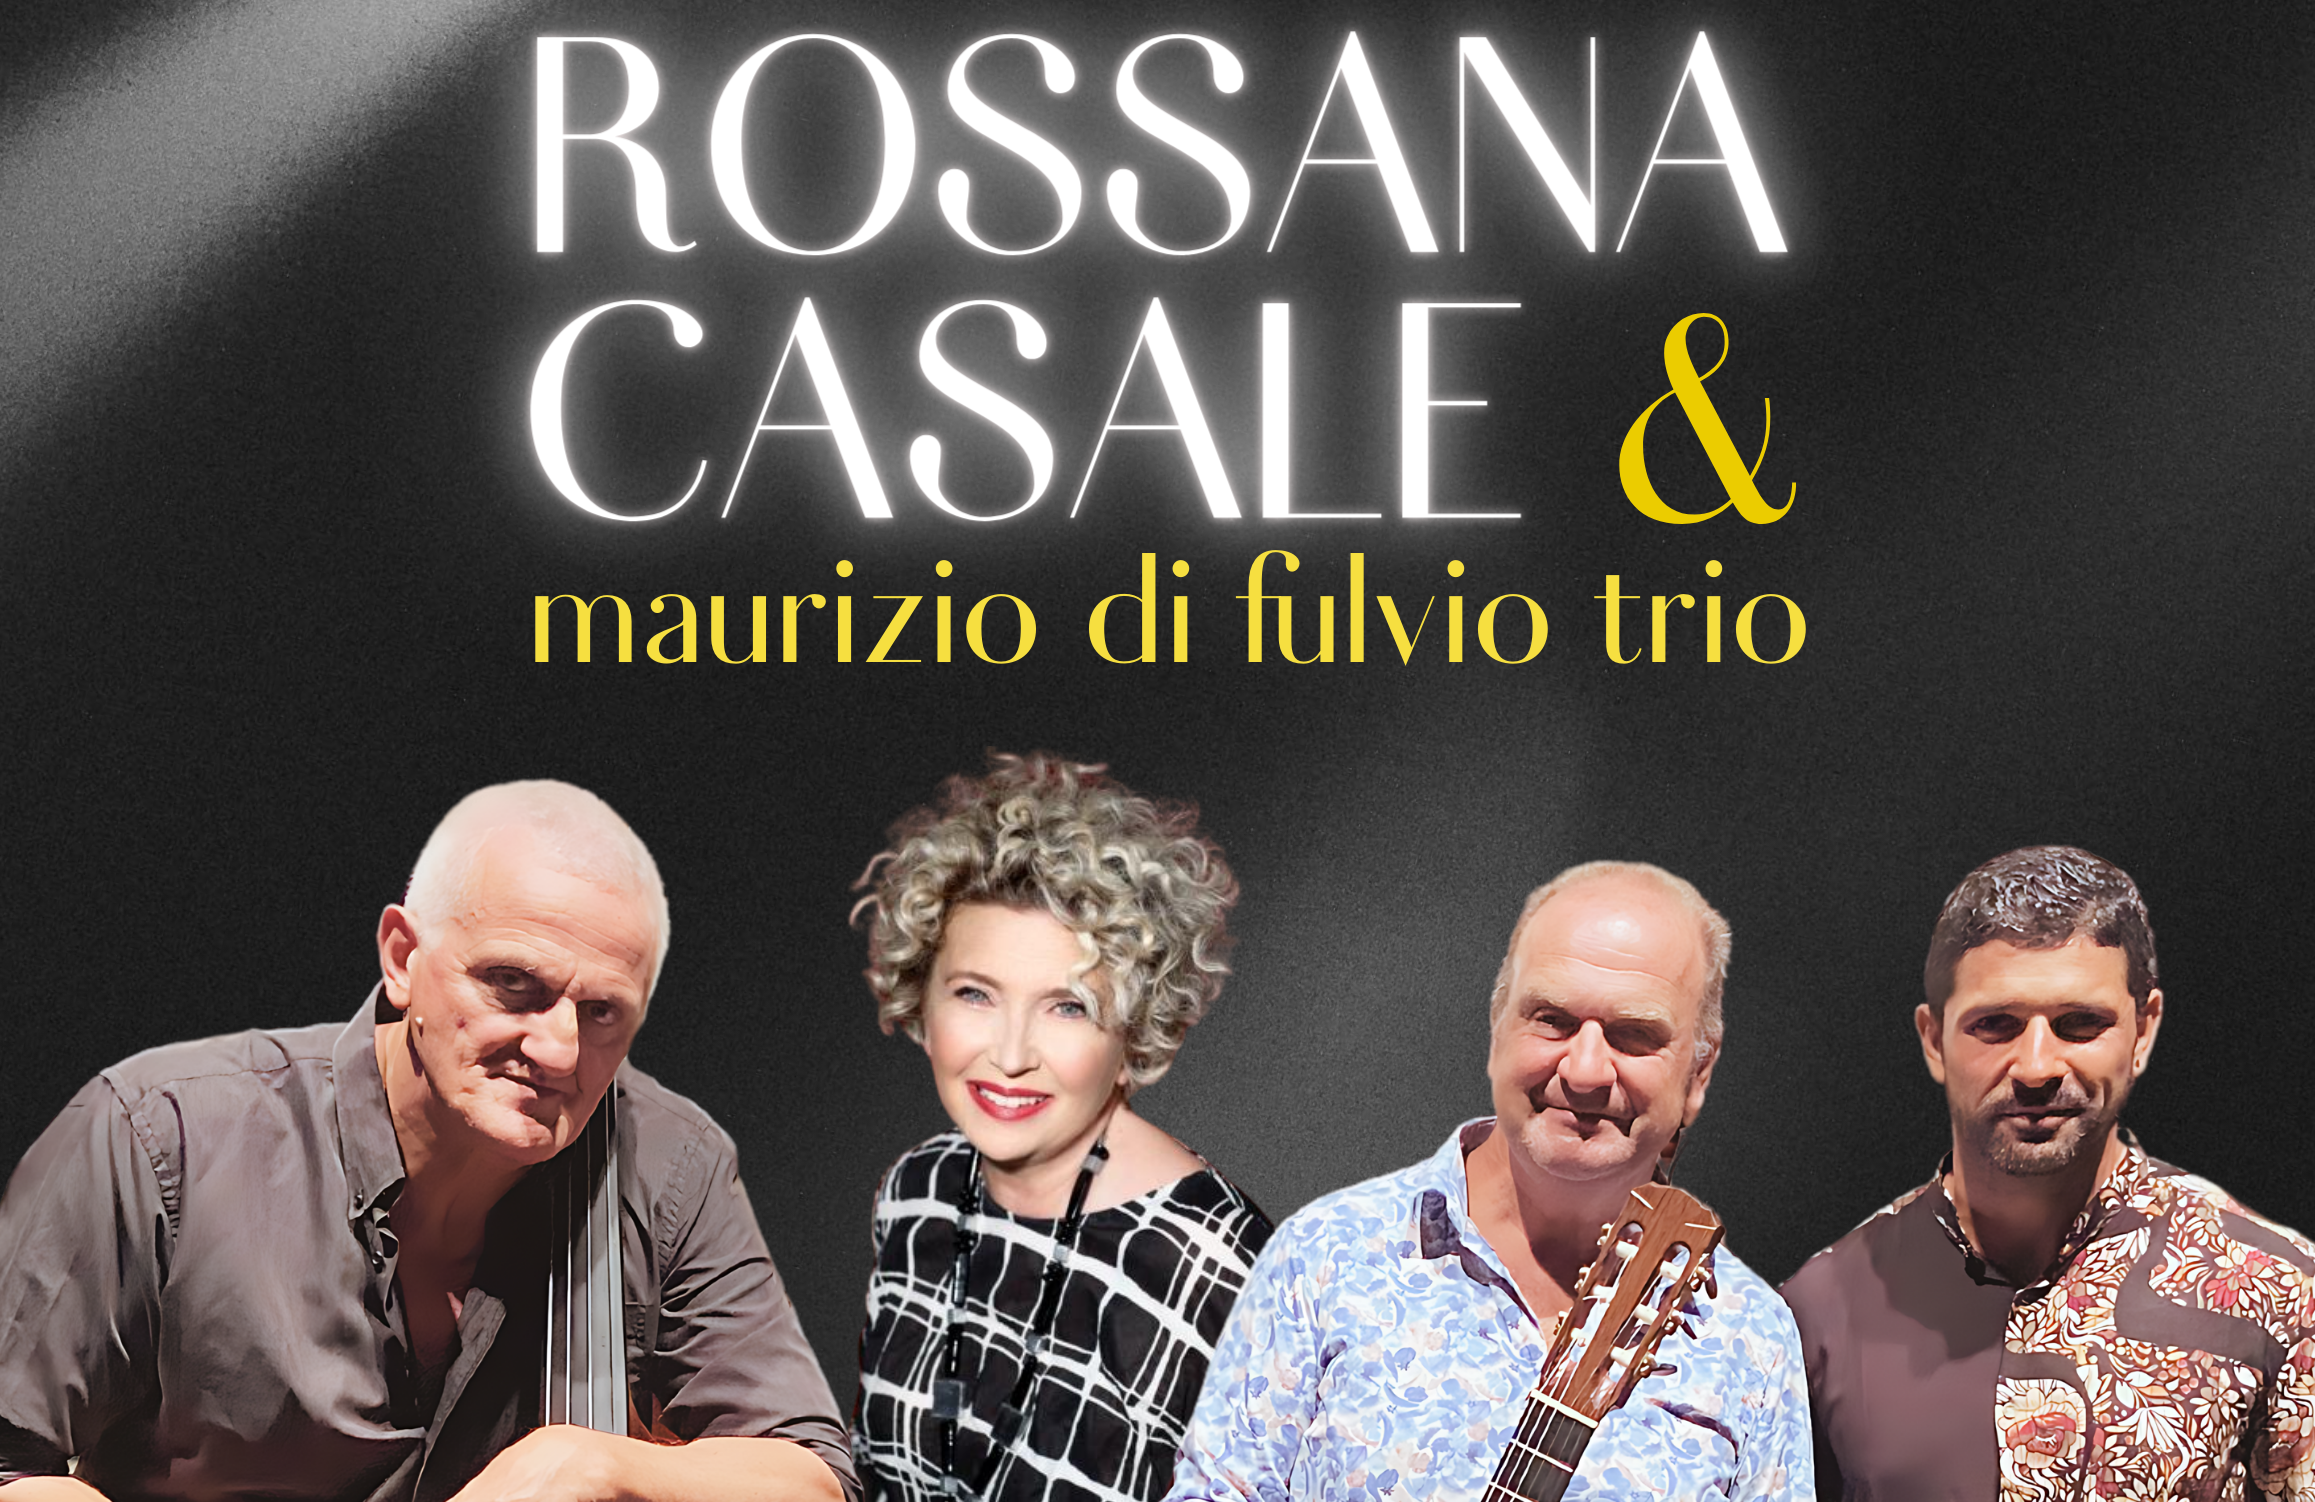 Ad Acustica arriva Rossana Casale con il Maurizio Di Fulvio Trio